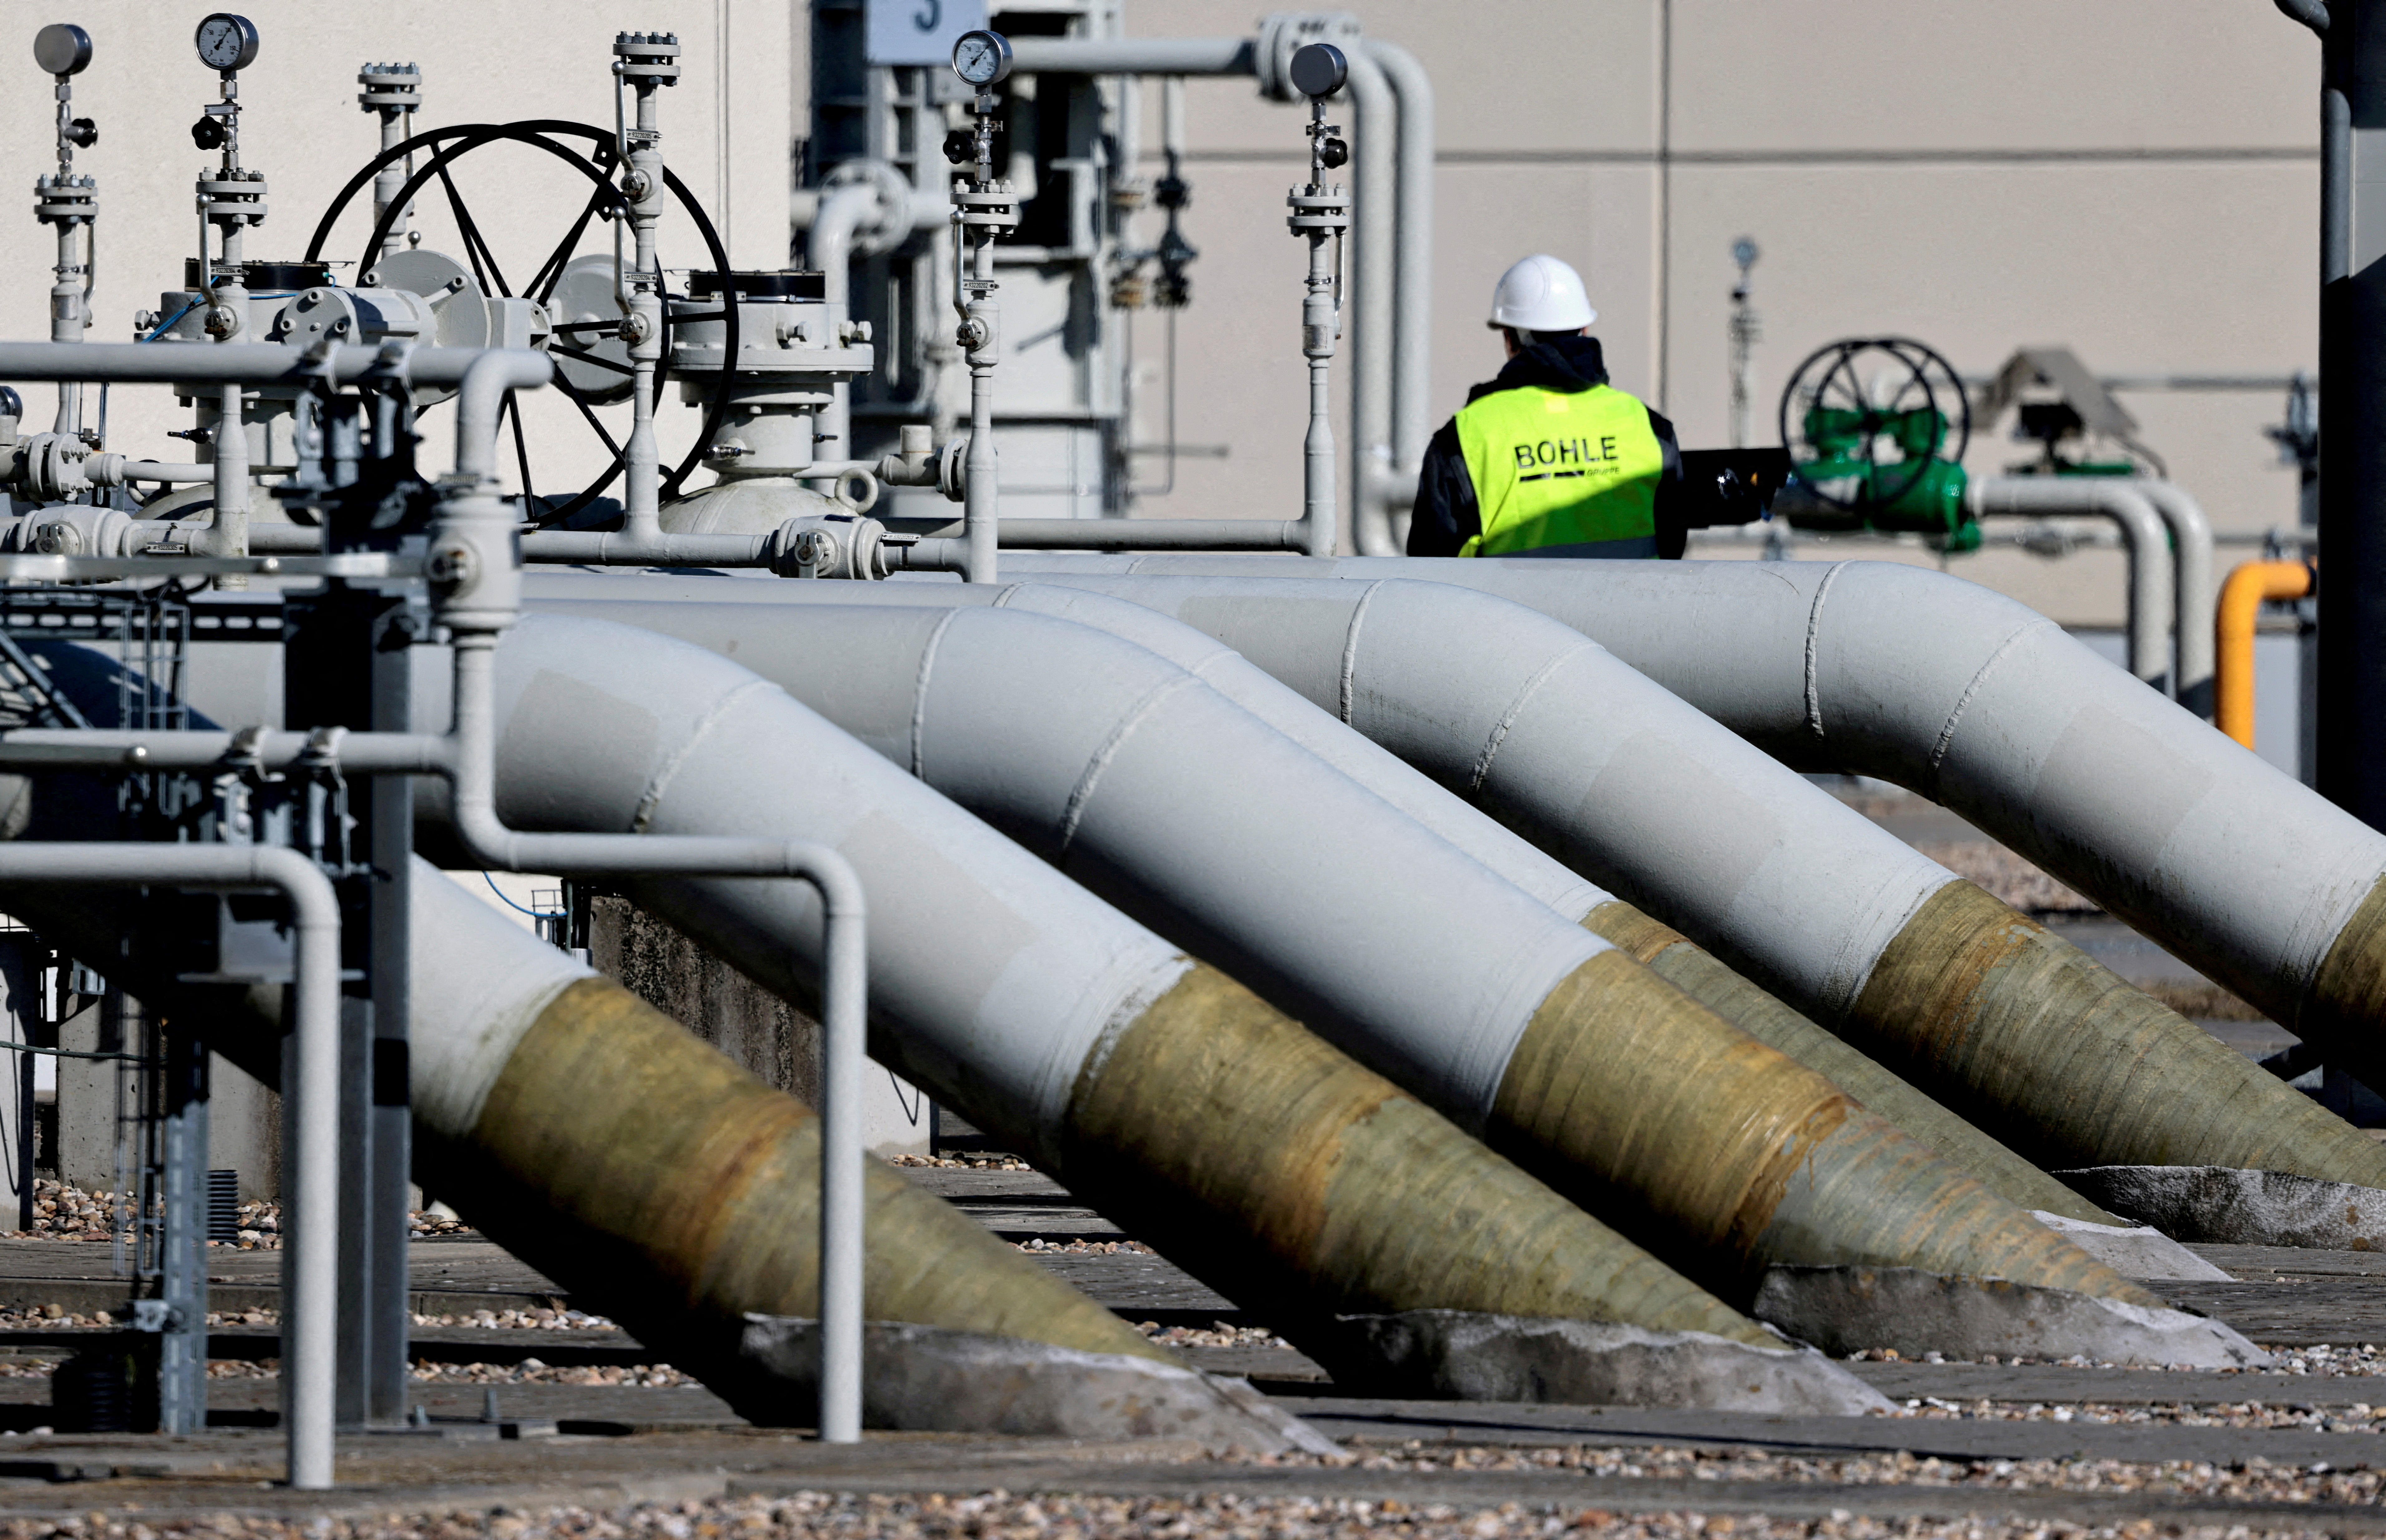 FOTO DE ARCHIVO: Las tuberías en las instalaciones de recalada del gasoducto 'Nord Stream 1' se muestran en Lubmin, Alemania, el 8 de marzo de 2022. REUTERS/Hannibal Hanschke/File Photo
